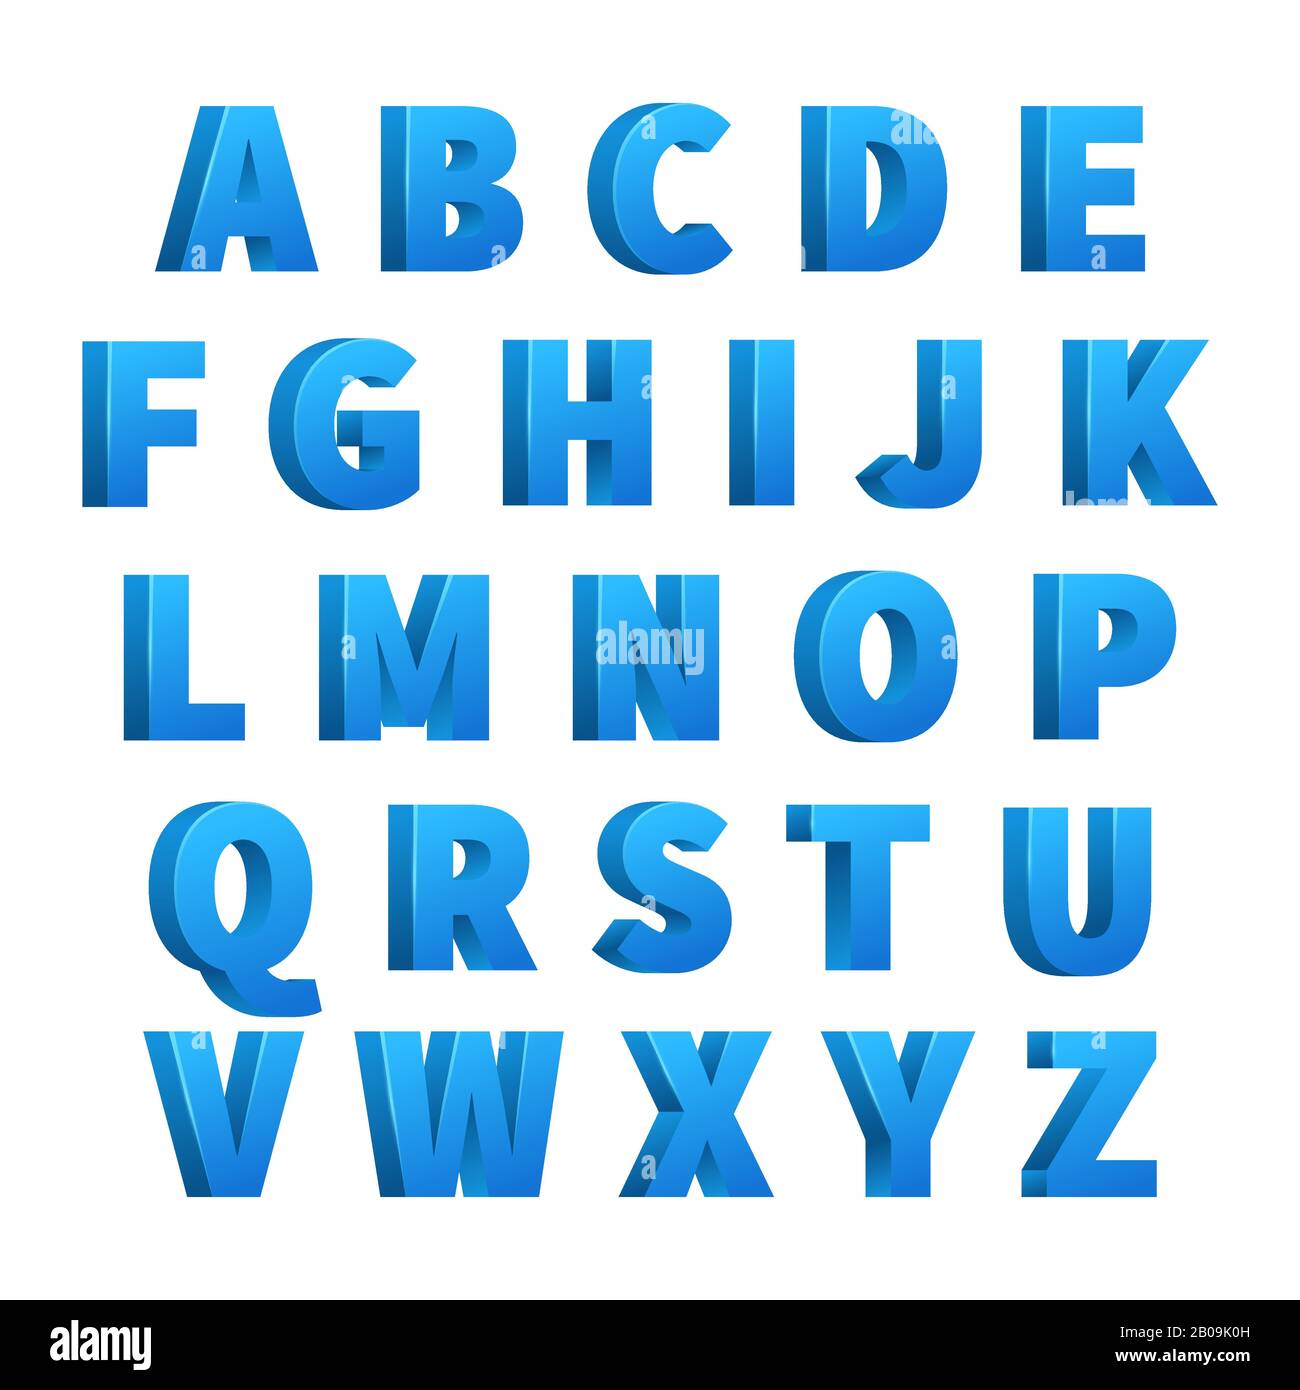 Eisblau, 3D-Buchstaben, Zeichen, Alphabet, Schriftzüge. Design Alphabet Vektor, Abbildung des eiskalten Alphabets Stock Vektor